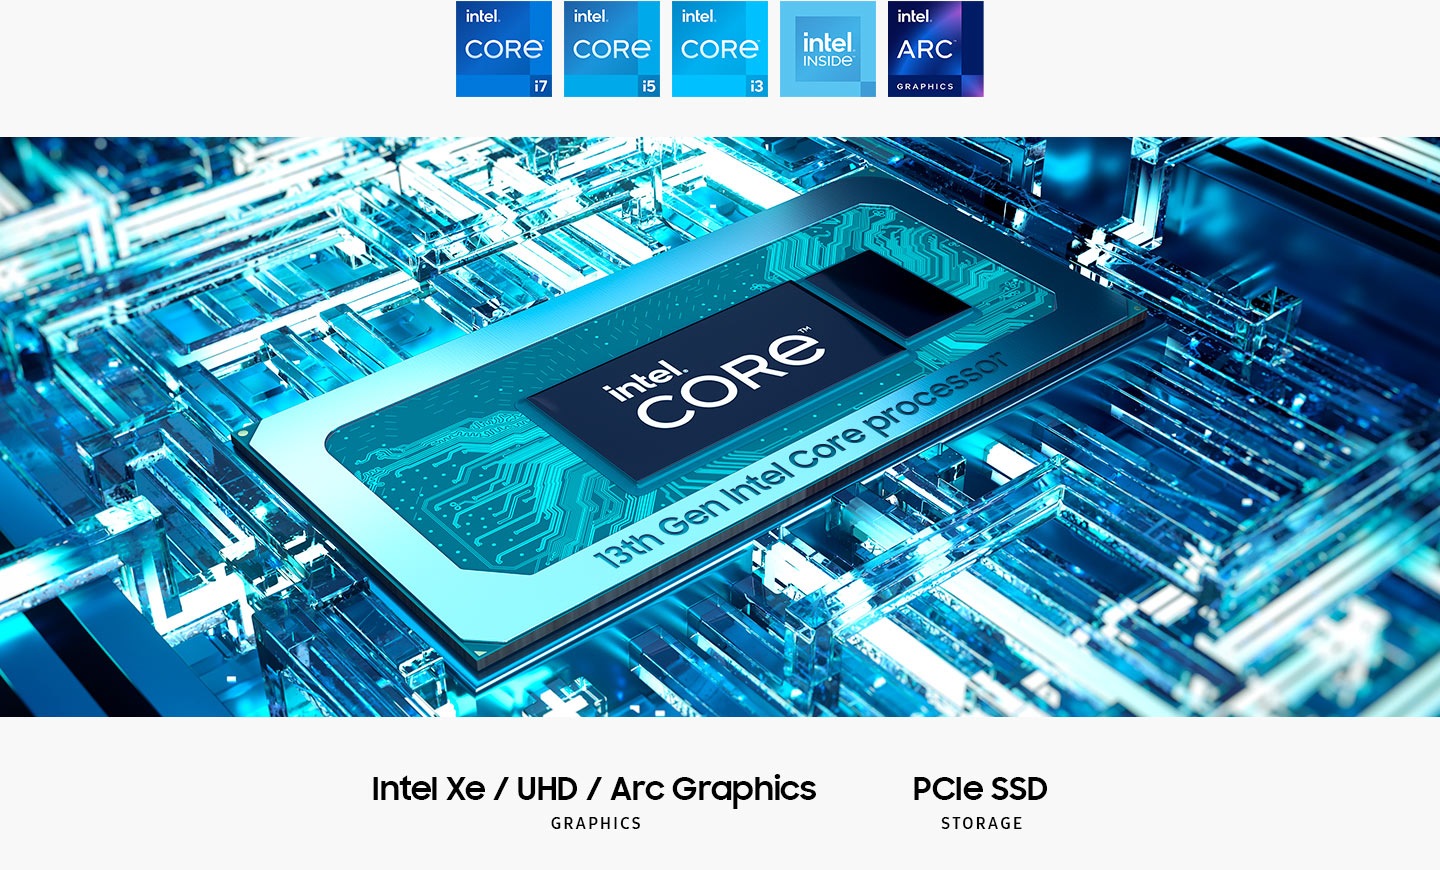 13 वीं पीढ़ी के Intel® Core ™ प्रोसेसर मदरबोर्ड पर Intel® Core ™ पाठ के साथ बीच में है। इंटेल एक्सई / यूएचडी / आर्क ग्राफिक्स। PCIE SSD स्टोरेज। इंटेल कोर i7 लोगो, इंटेल कोर i5, इंटेल कोर i3, इंटेल इनसाइड और इंटेल आर्क ग्राफिक्स प्रदर्शित किए जाते हैं।